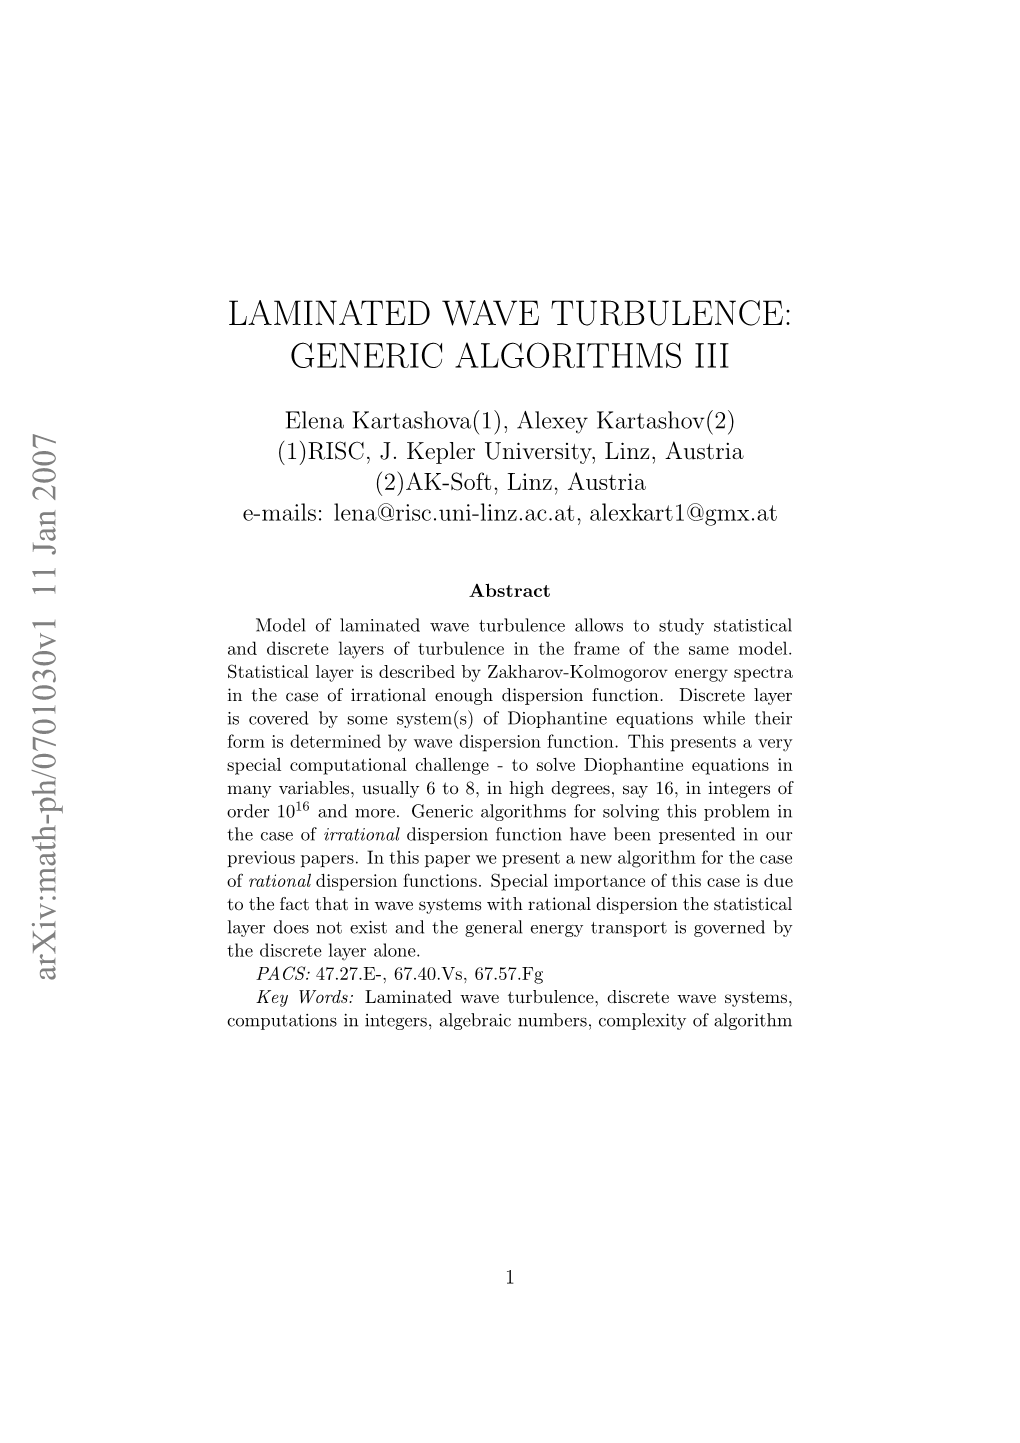 Laminated Wave Turbulence: Generic Algorithms